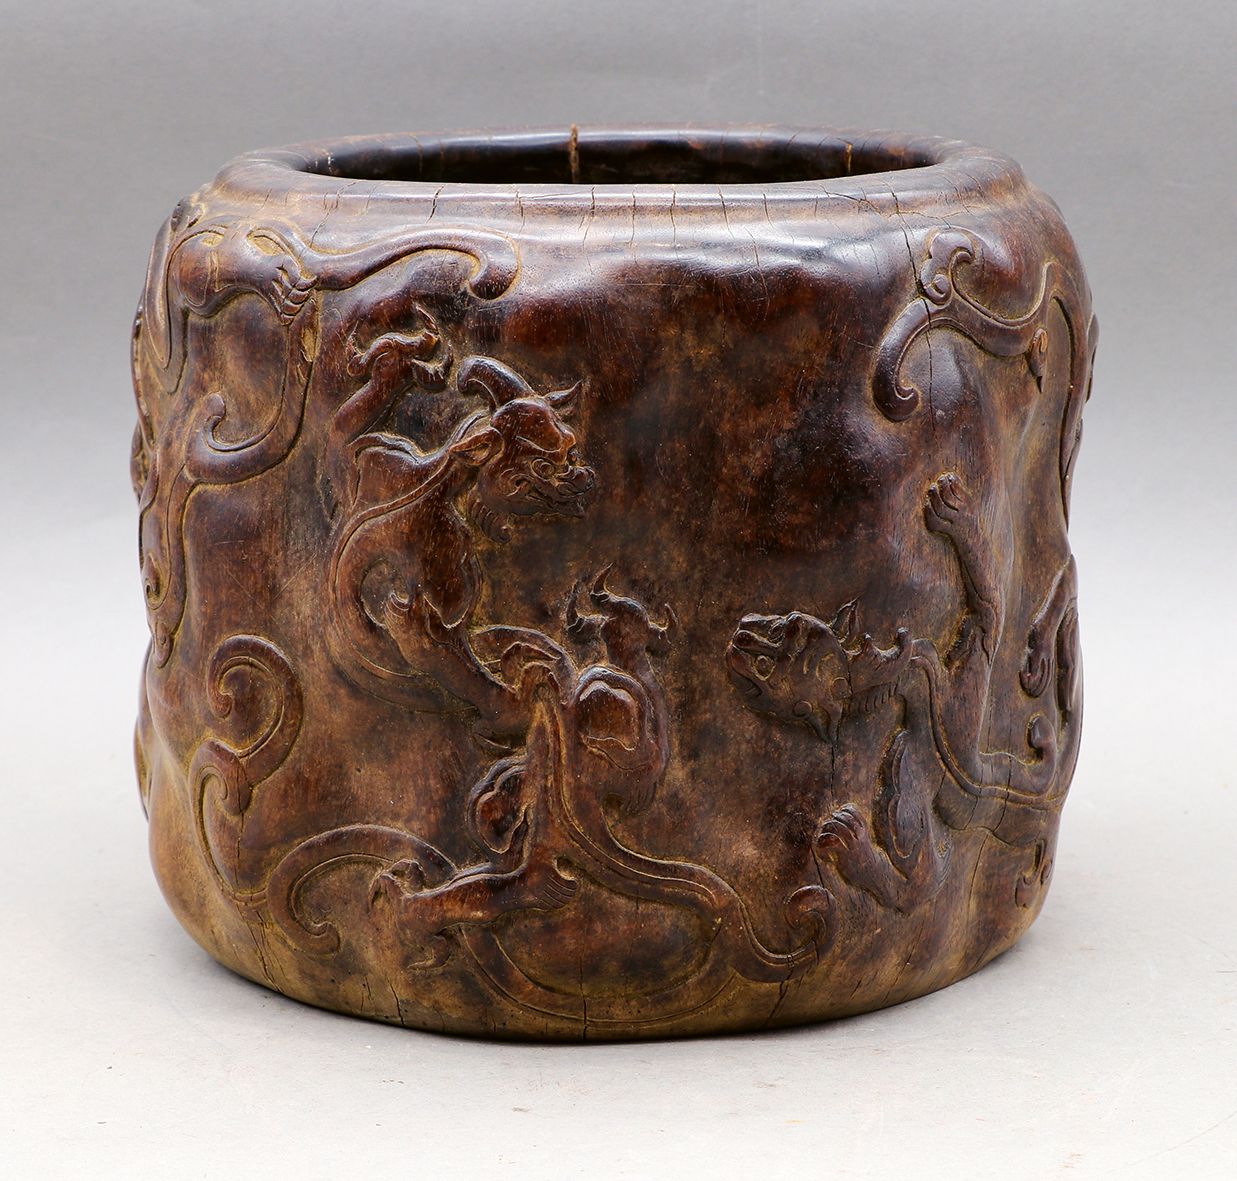 Null Pinselhalter (bitong) aus Edelholz, möglicherweise huanghuali, mit schöner &hellip;